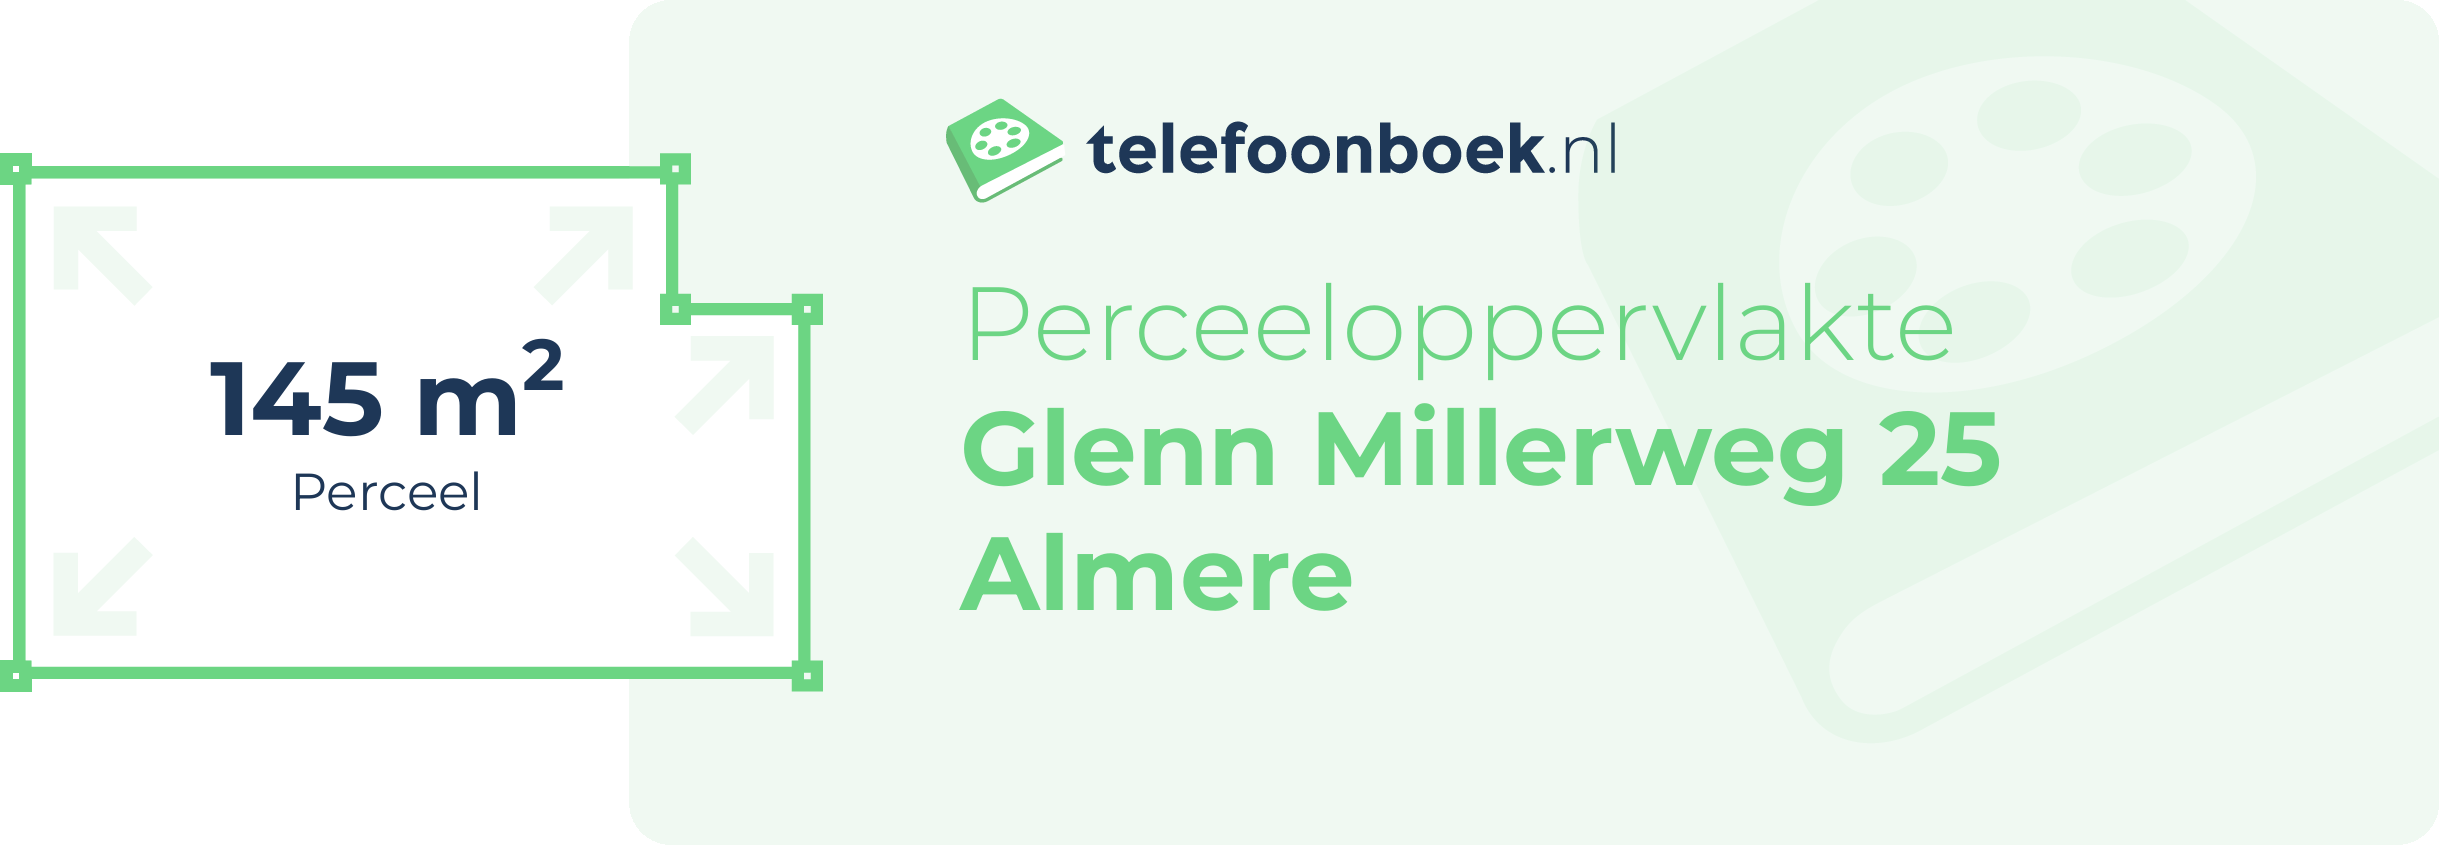 Perceeloppervlakte Glenn Millerweg 25 Almere